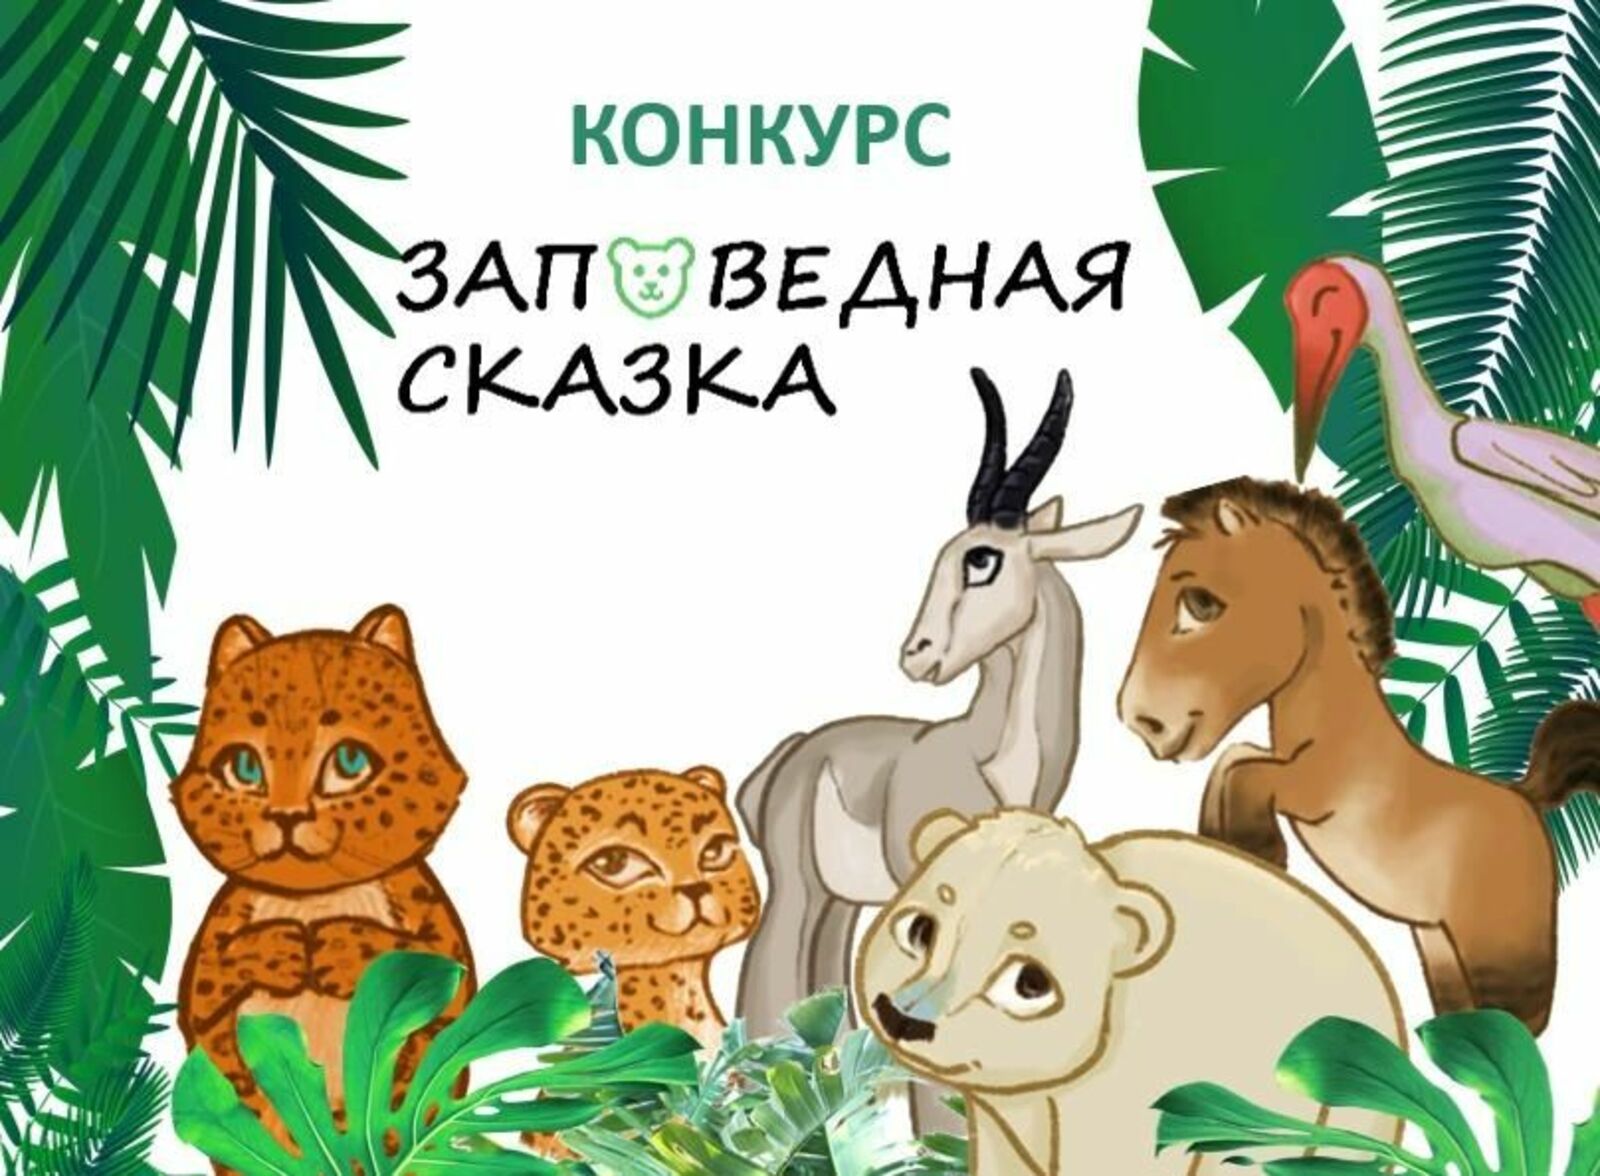 8 сентября стартует Всероссийский детский конкурс «Заповедная сказка» о краснокнижных животных